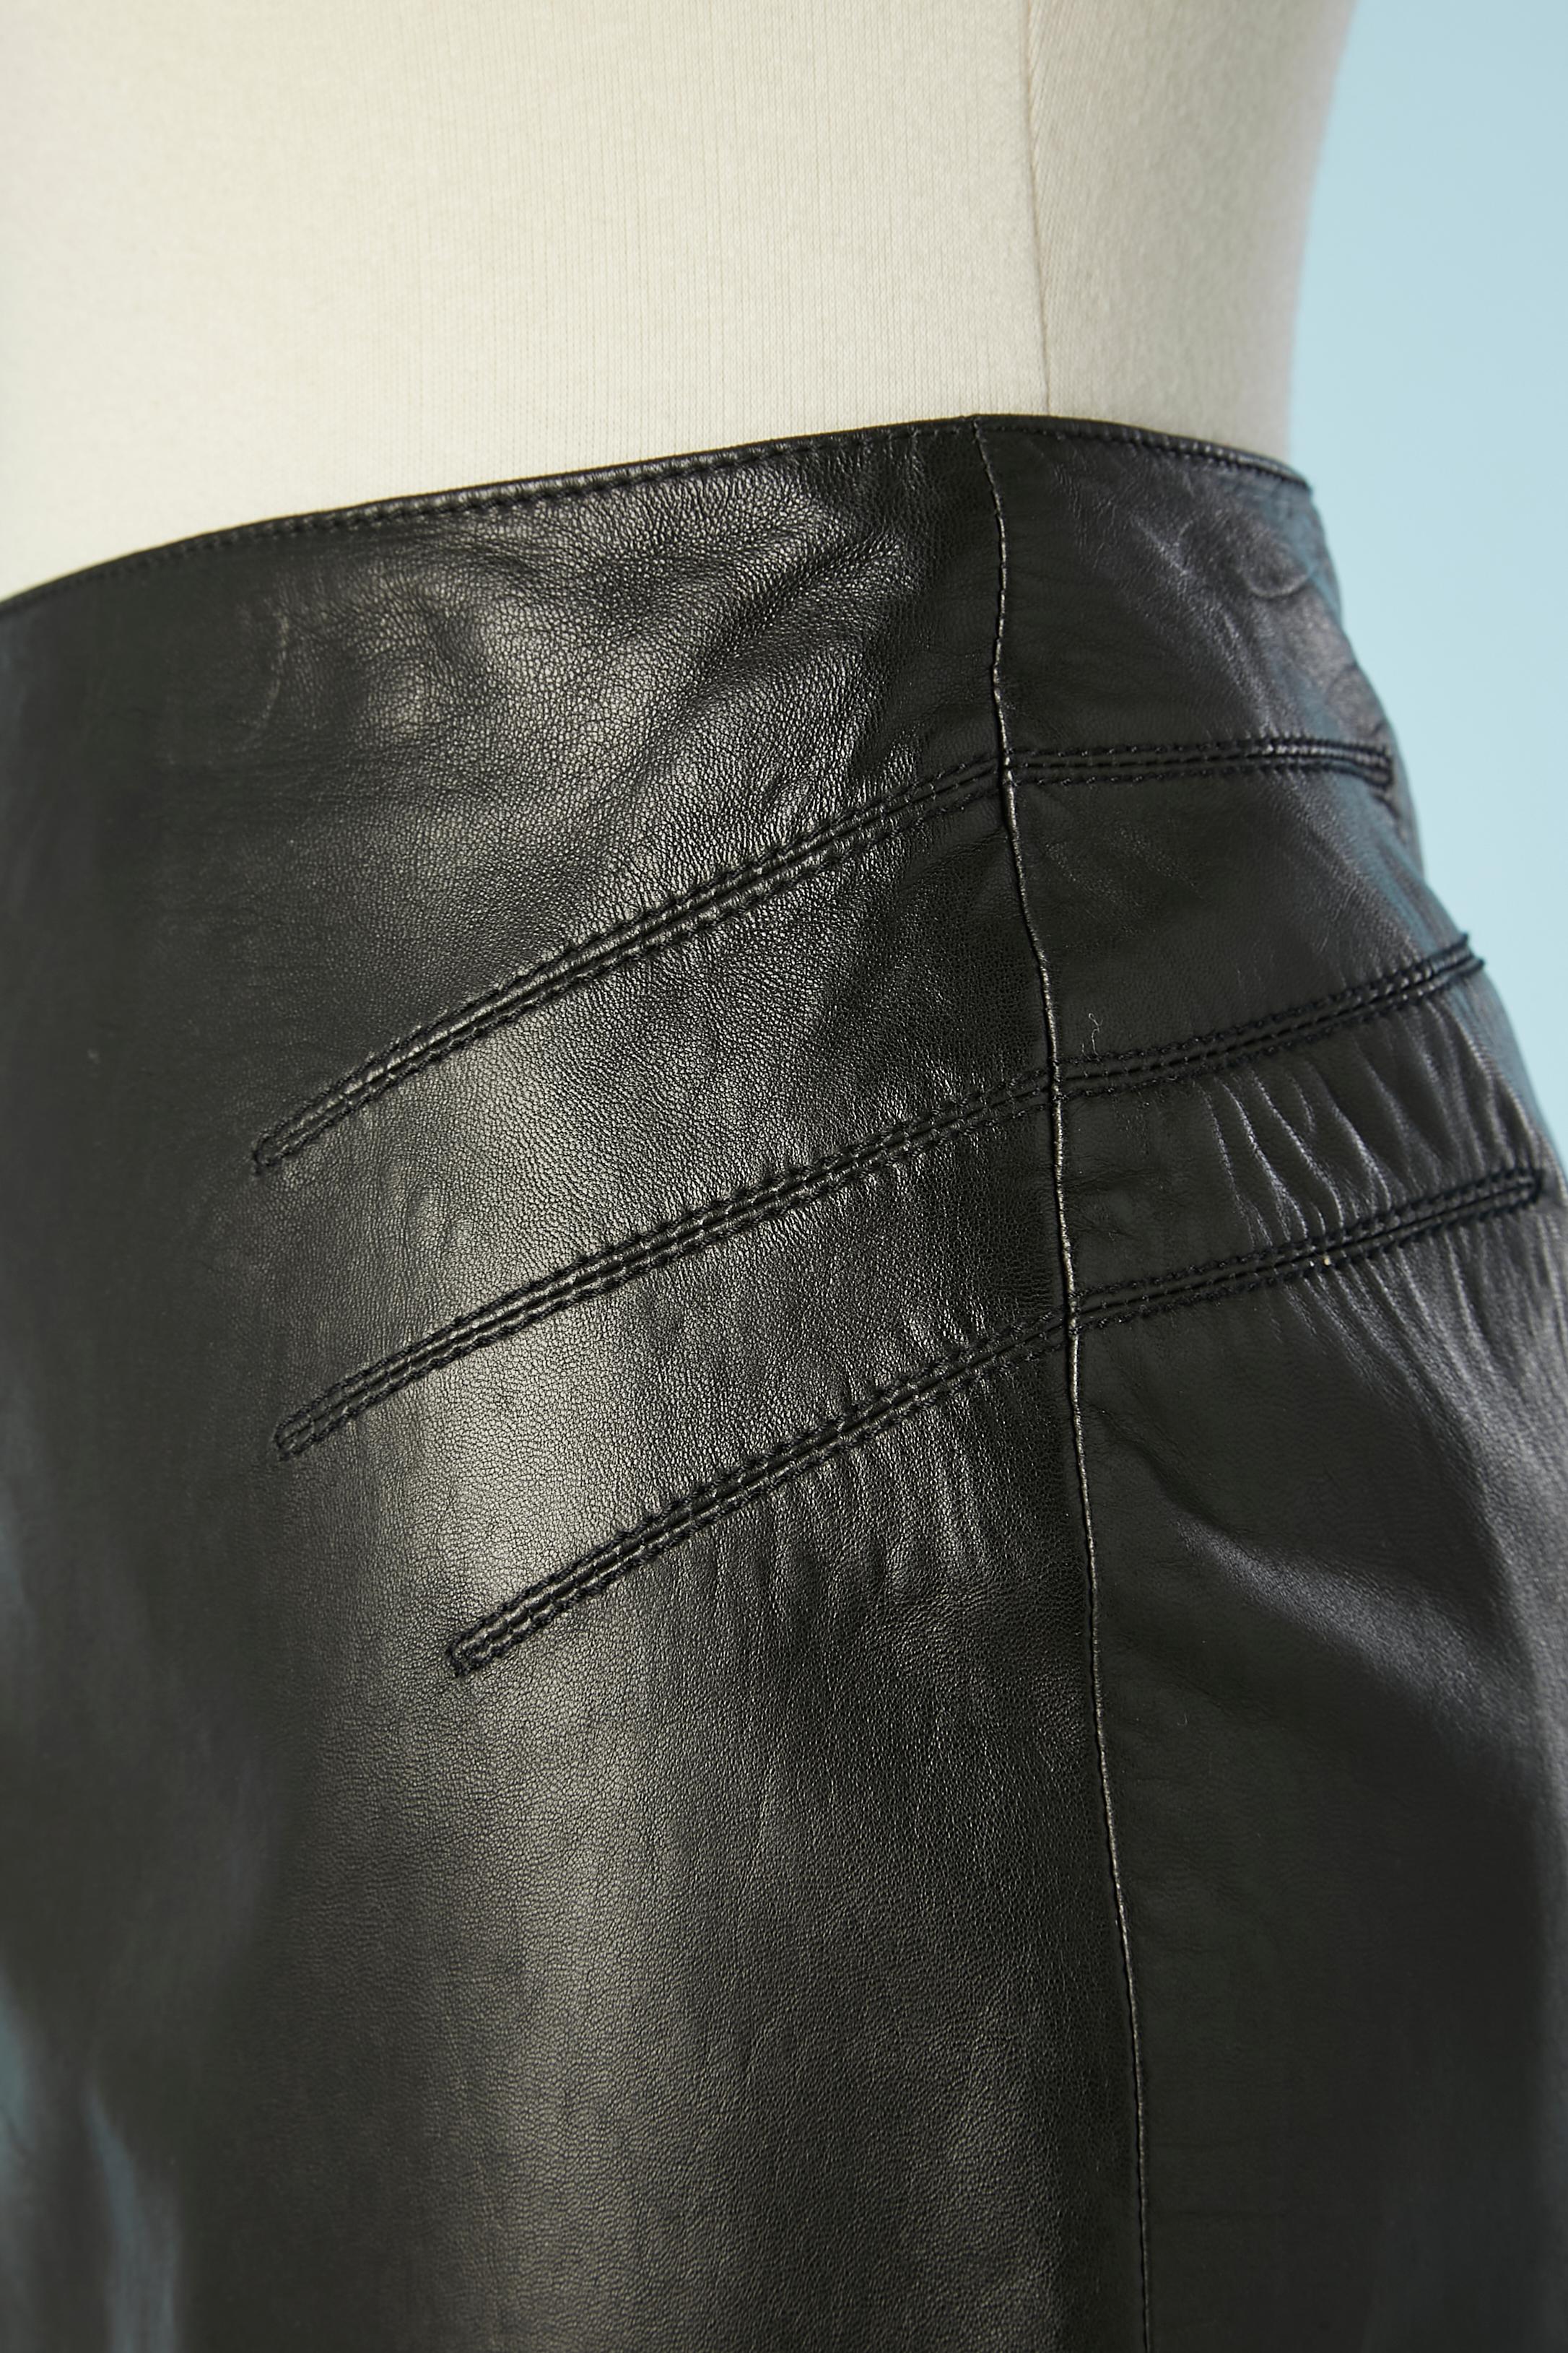 Schwarzer Lederrock mit Ausschnitt an den Hüften und am Rücken. Reißverschluss in der hinteren Mitte. Zusammensetzung des Futters: 57% Viskose, 43% Polyester. 
GRÖSSE 14 (Us) 